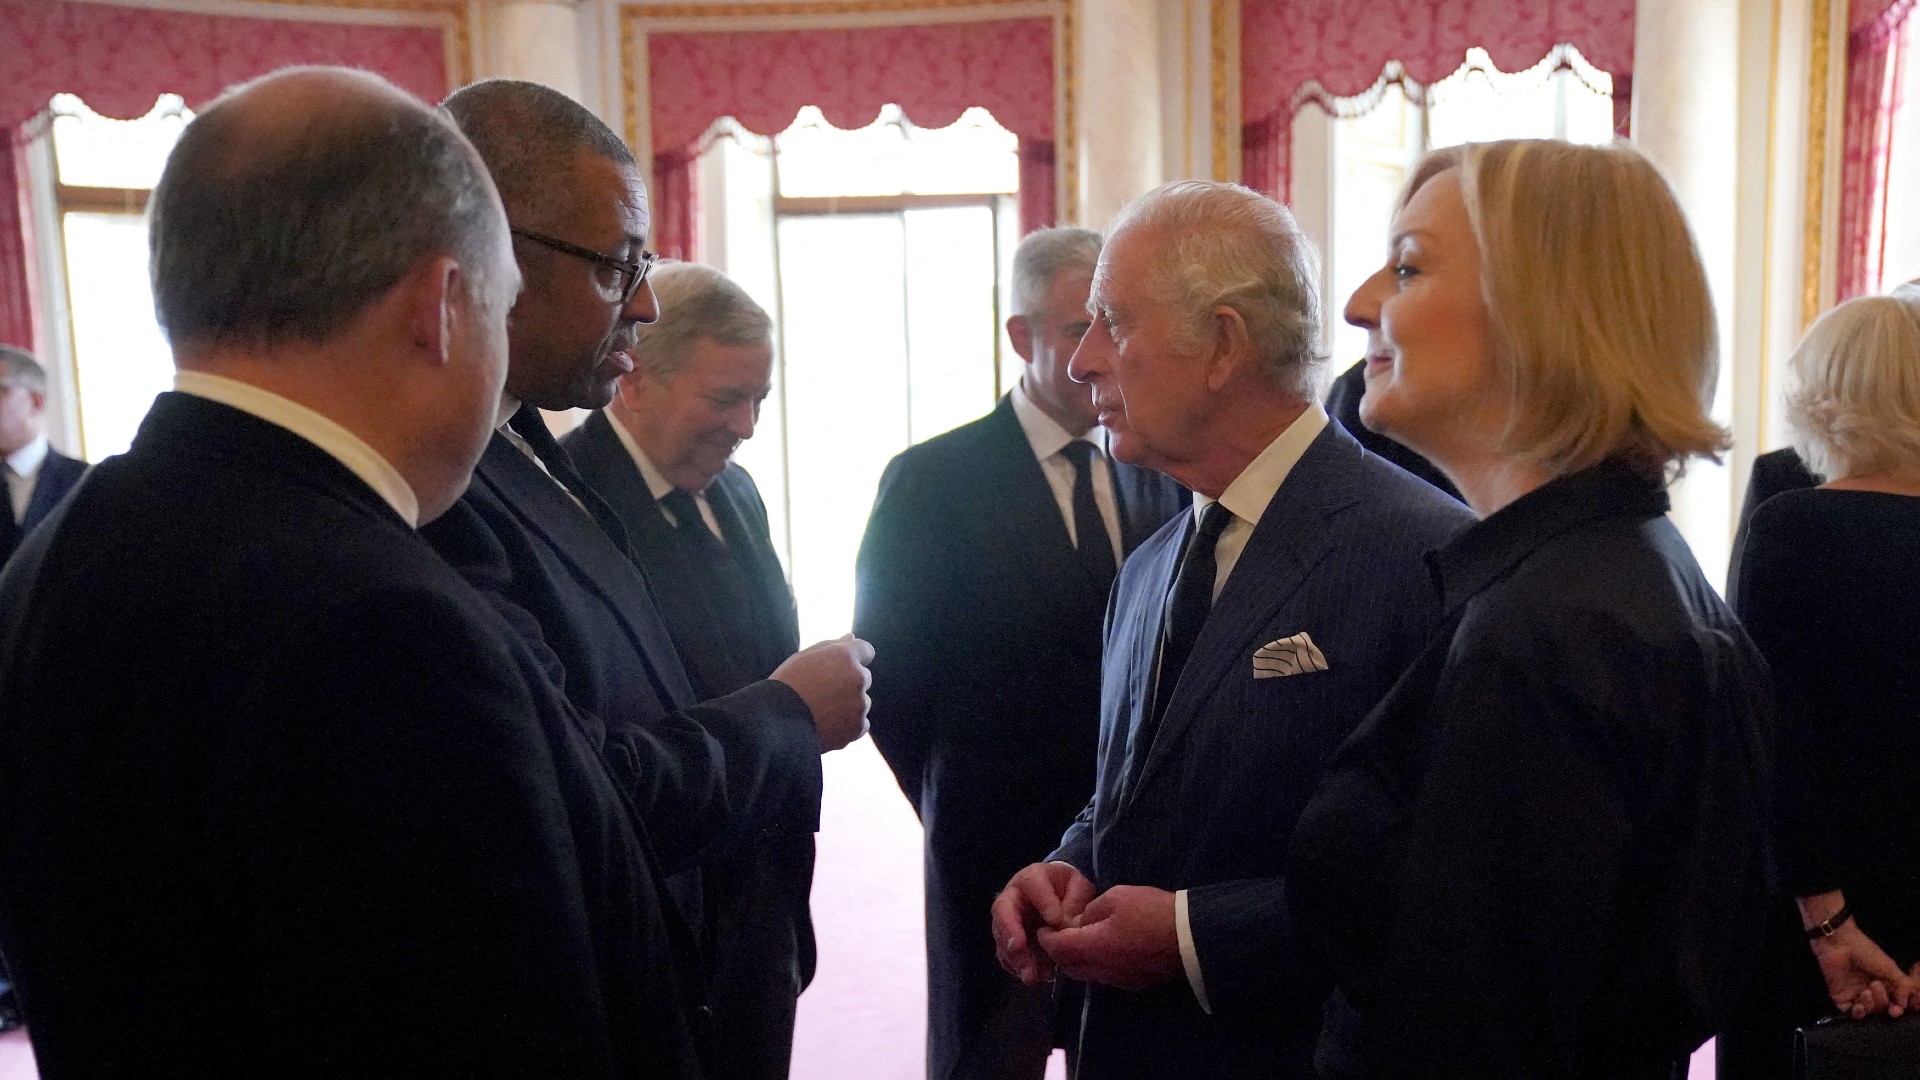 Le roi Charles III rencontre la Première ministre Liz Truss et des membres de son cabinet au palais de Buckingham à Londres, le 10 septembre 2022 (AFP)